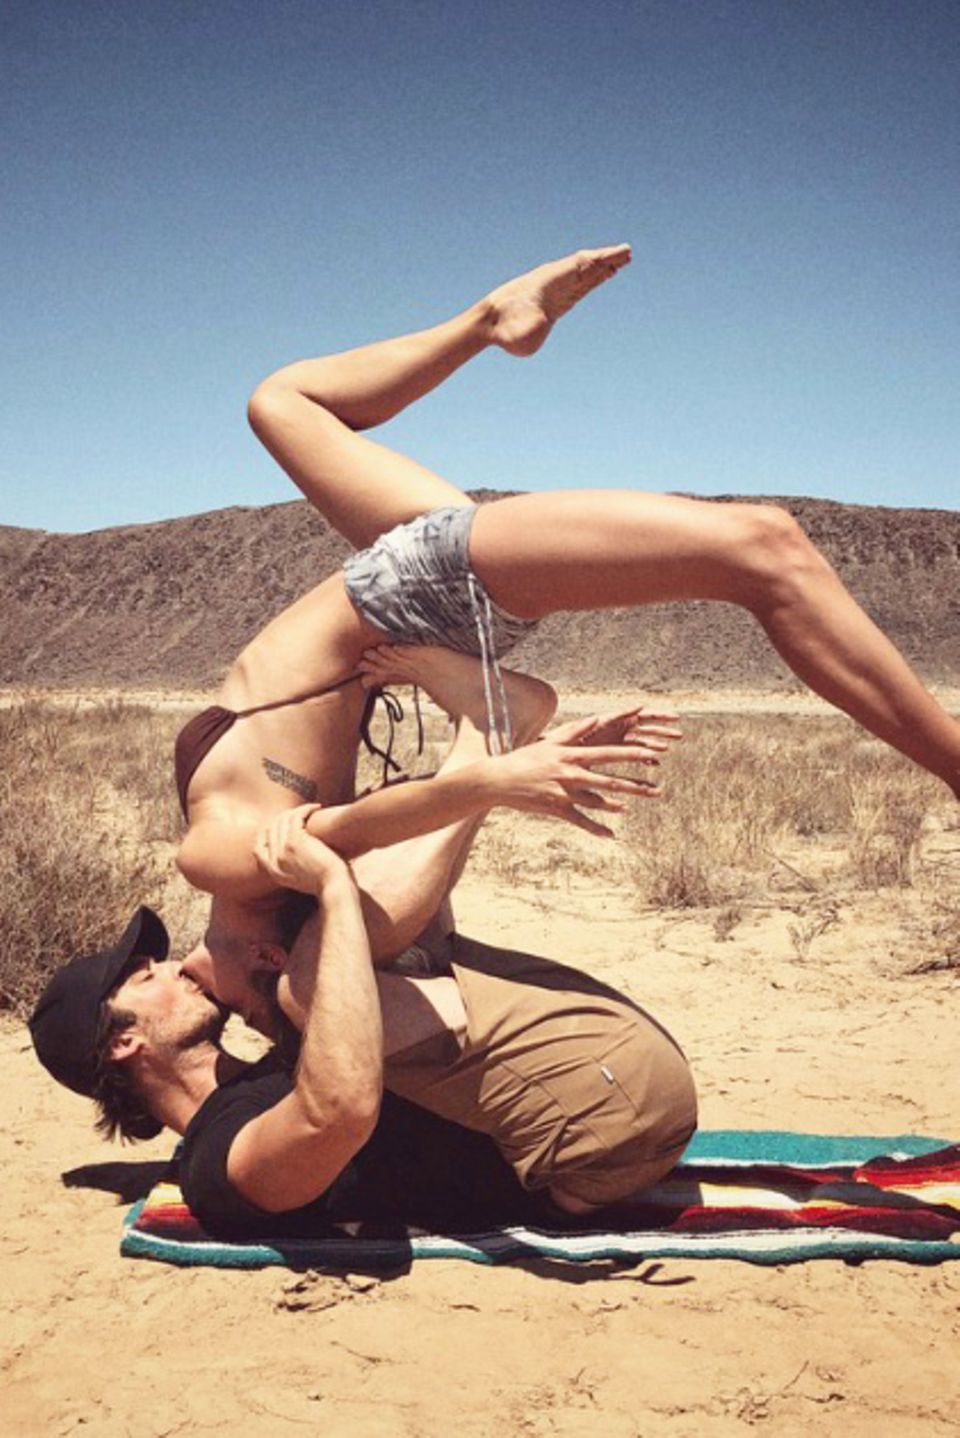 "Desert kisses", schreibt Twilight-Star Nikki Reed zu diesem ausgefallenen Kussfoto mit Ehemann Ian Somerhalder auf Instagram. Das Paar macht Yoga in der Wüste und verbrennt durch die Küsse sicherlich auch ein paar Kalorieren. 